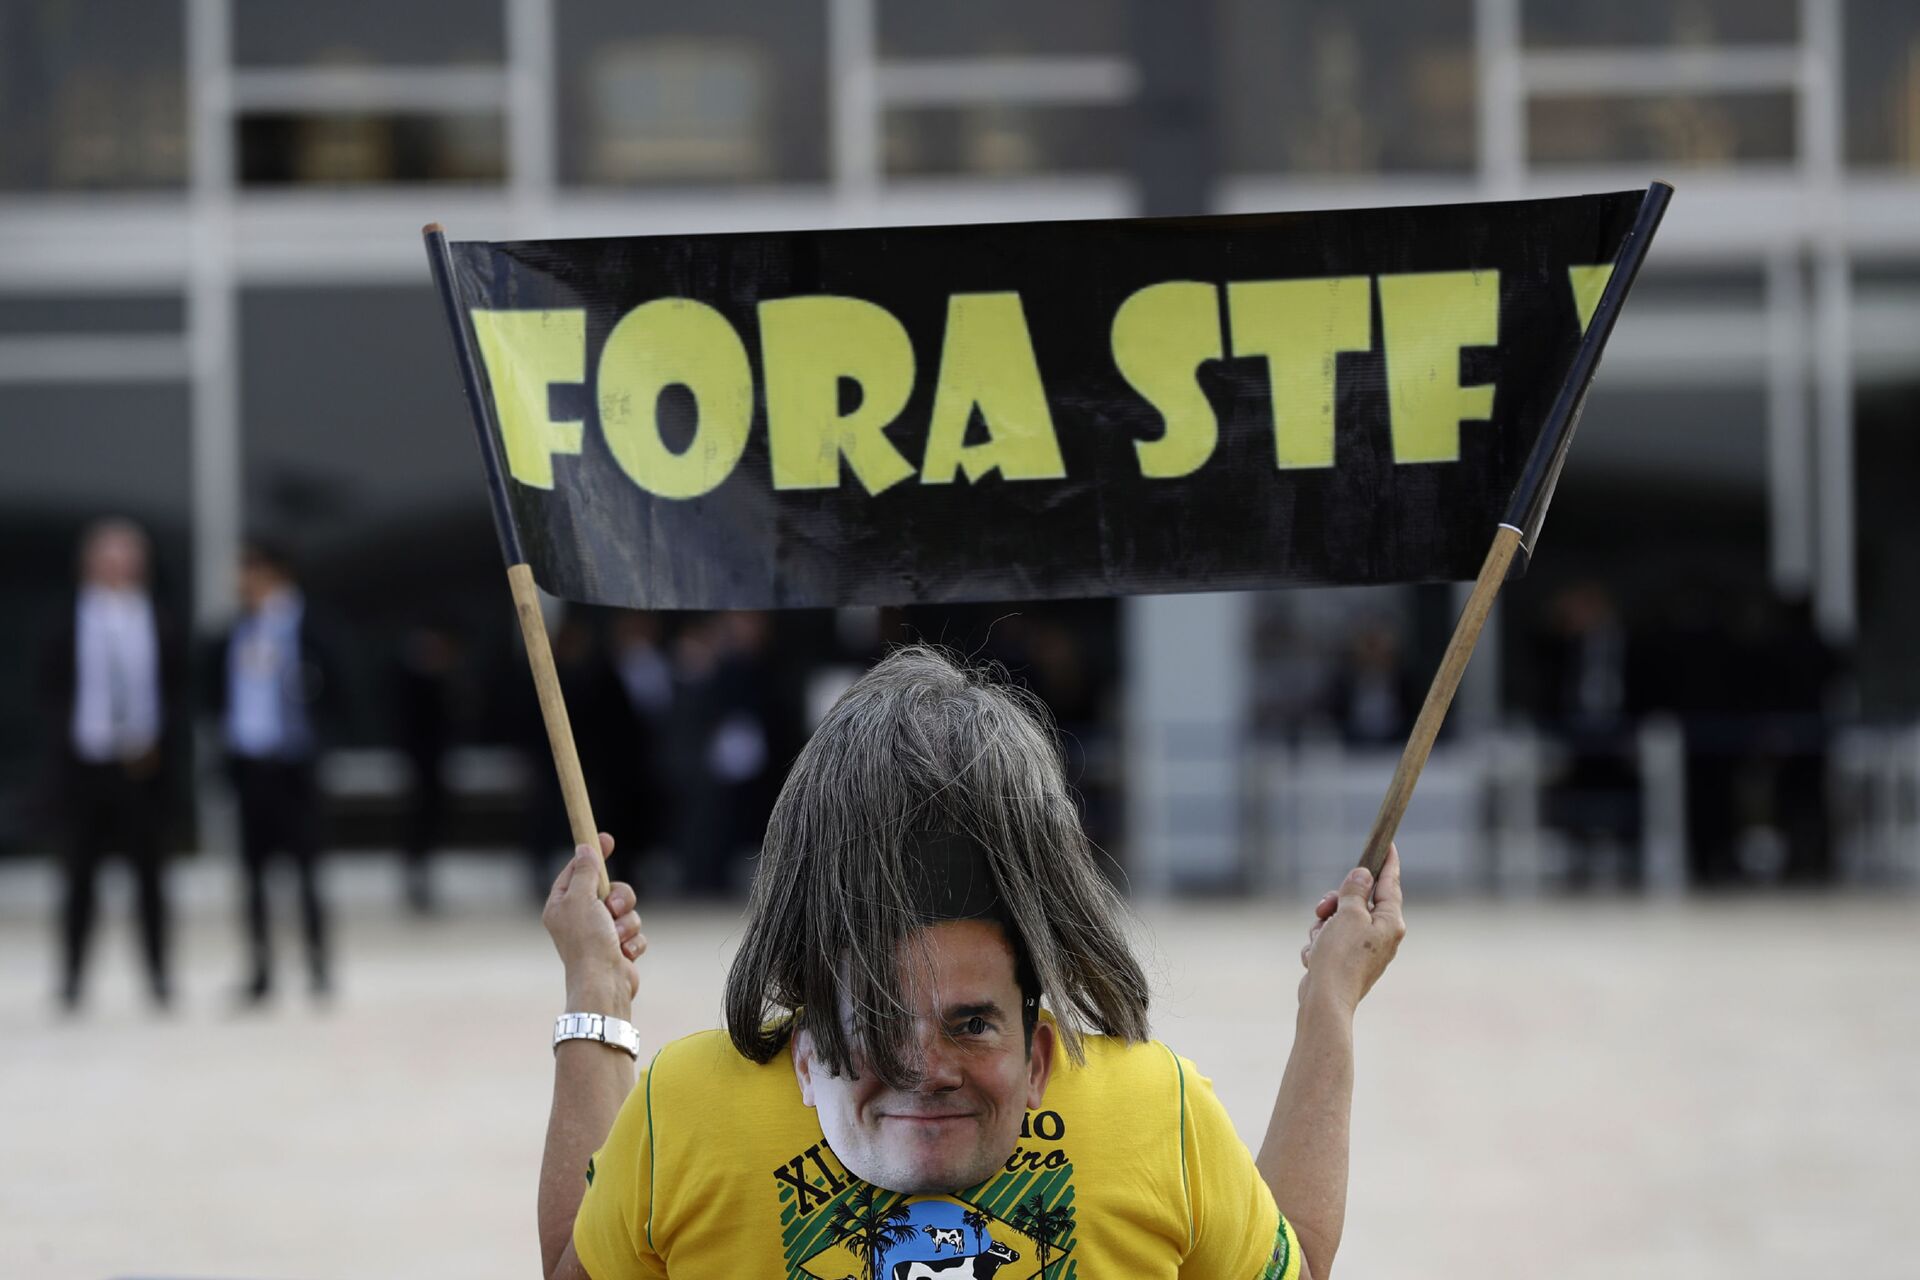 'Herança autoritária': STF deve decidir futuro da Lei de Segurança Nacional - Sputnik Brasil, 1920, 24.03.2021